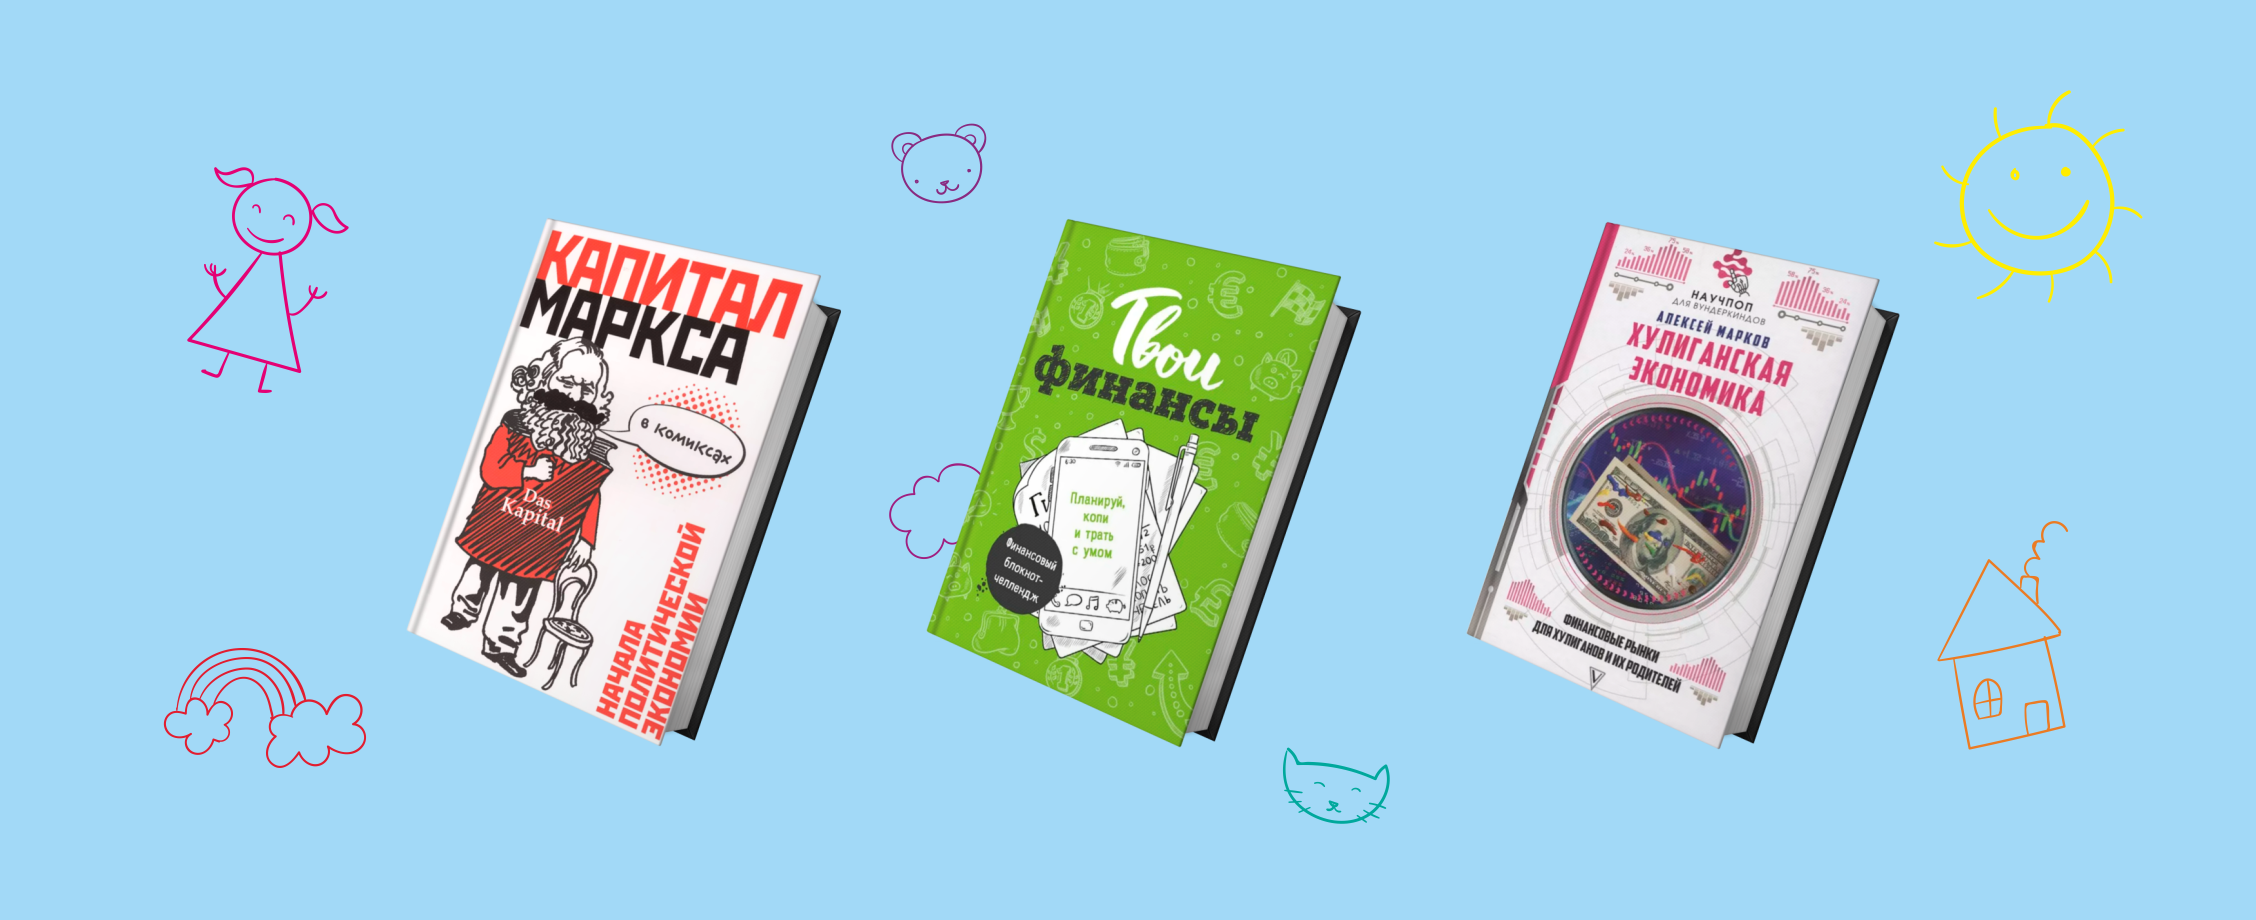 Личный бизнес-план и Маркс в комиксах: пять книг, которые помогут подростку понять экономику